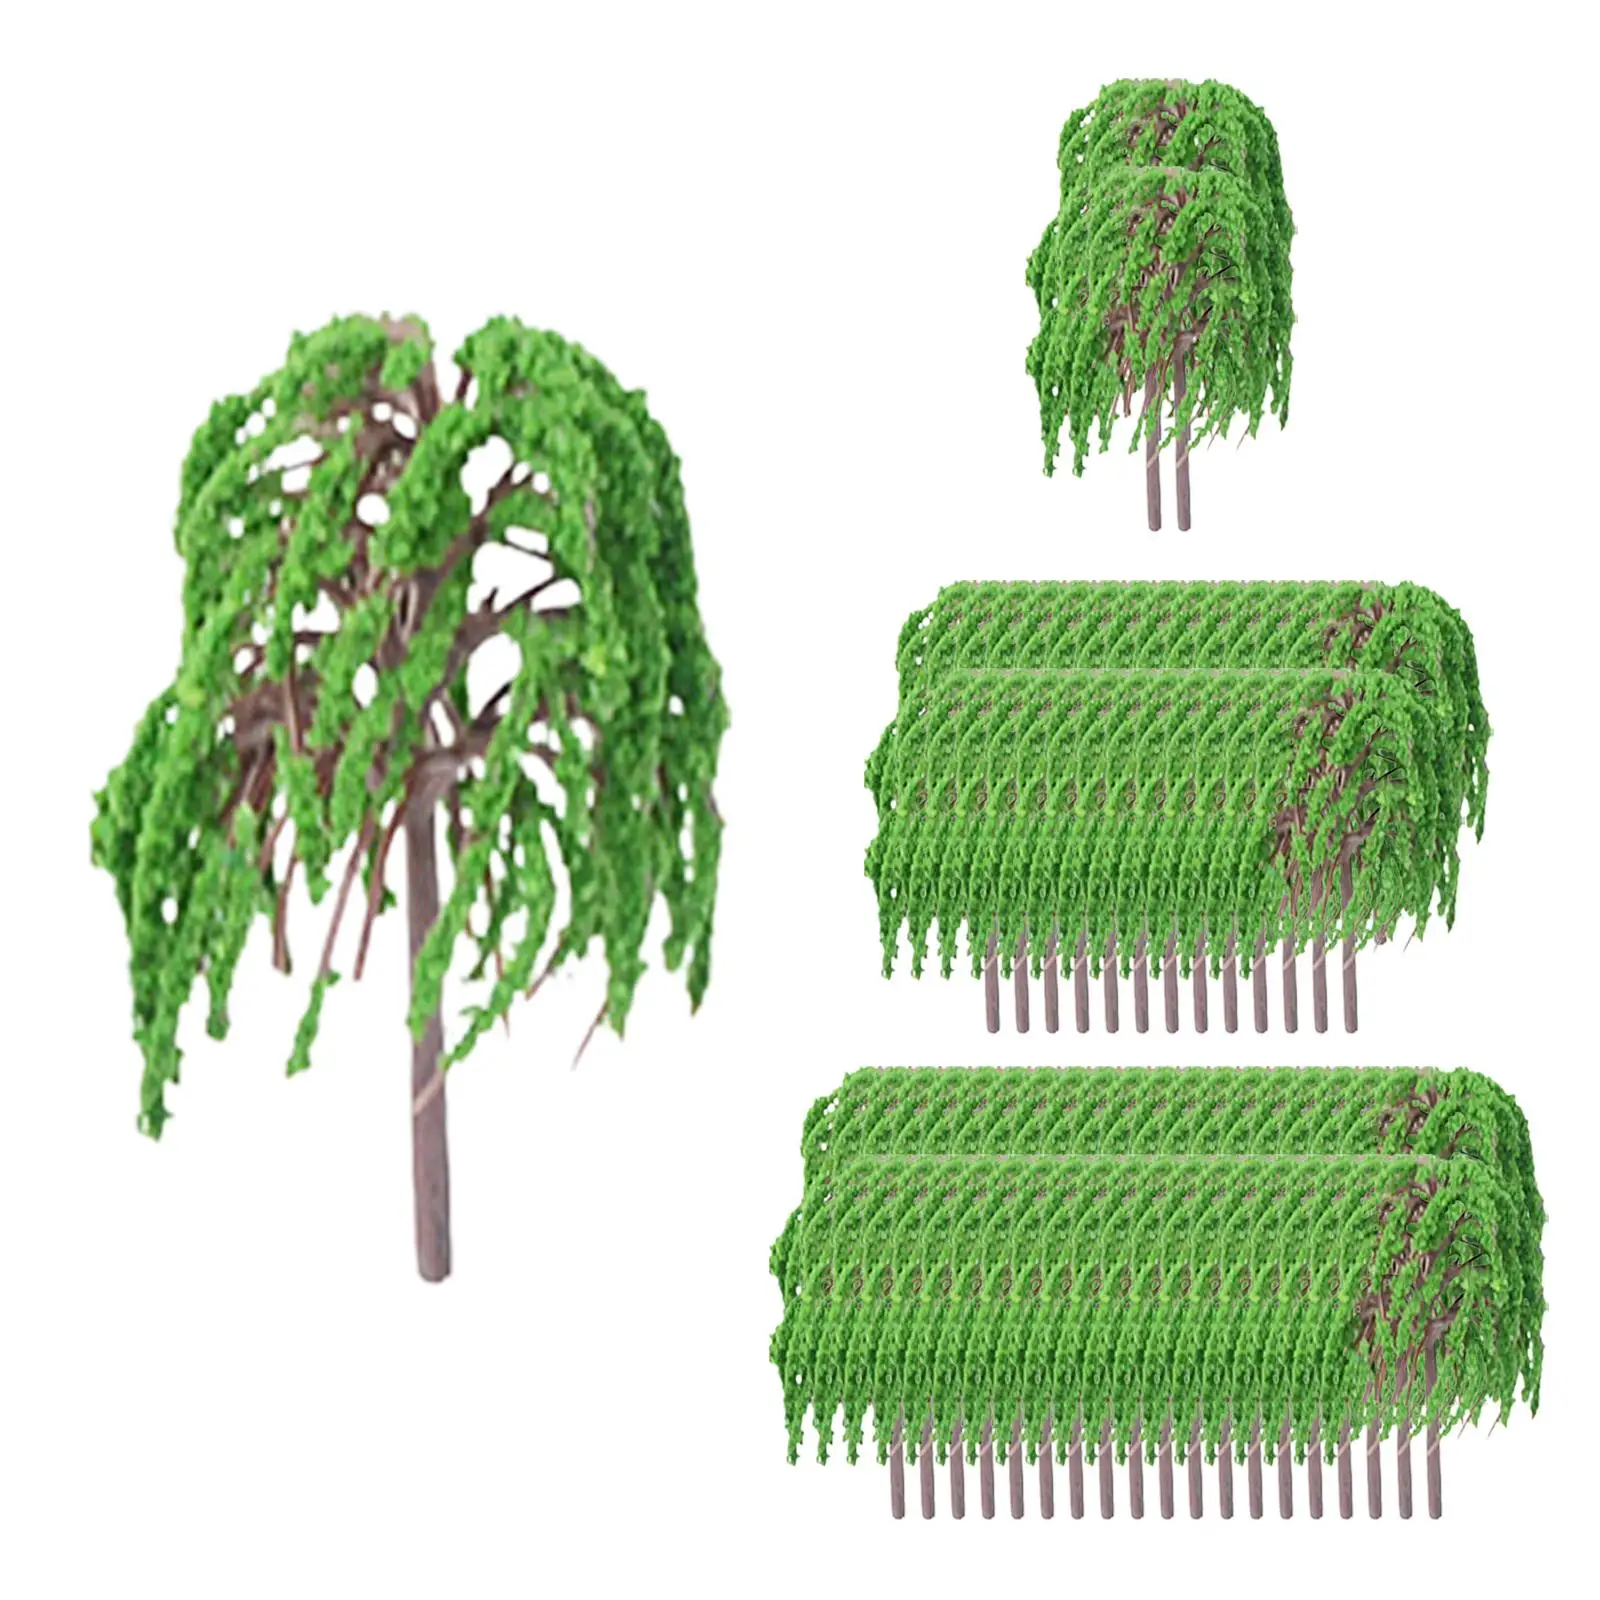 Tree Plant Ornamentm 1/75 Scale Mini Diorama Reusable Scenery Landscape Model